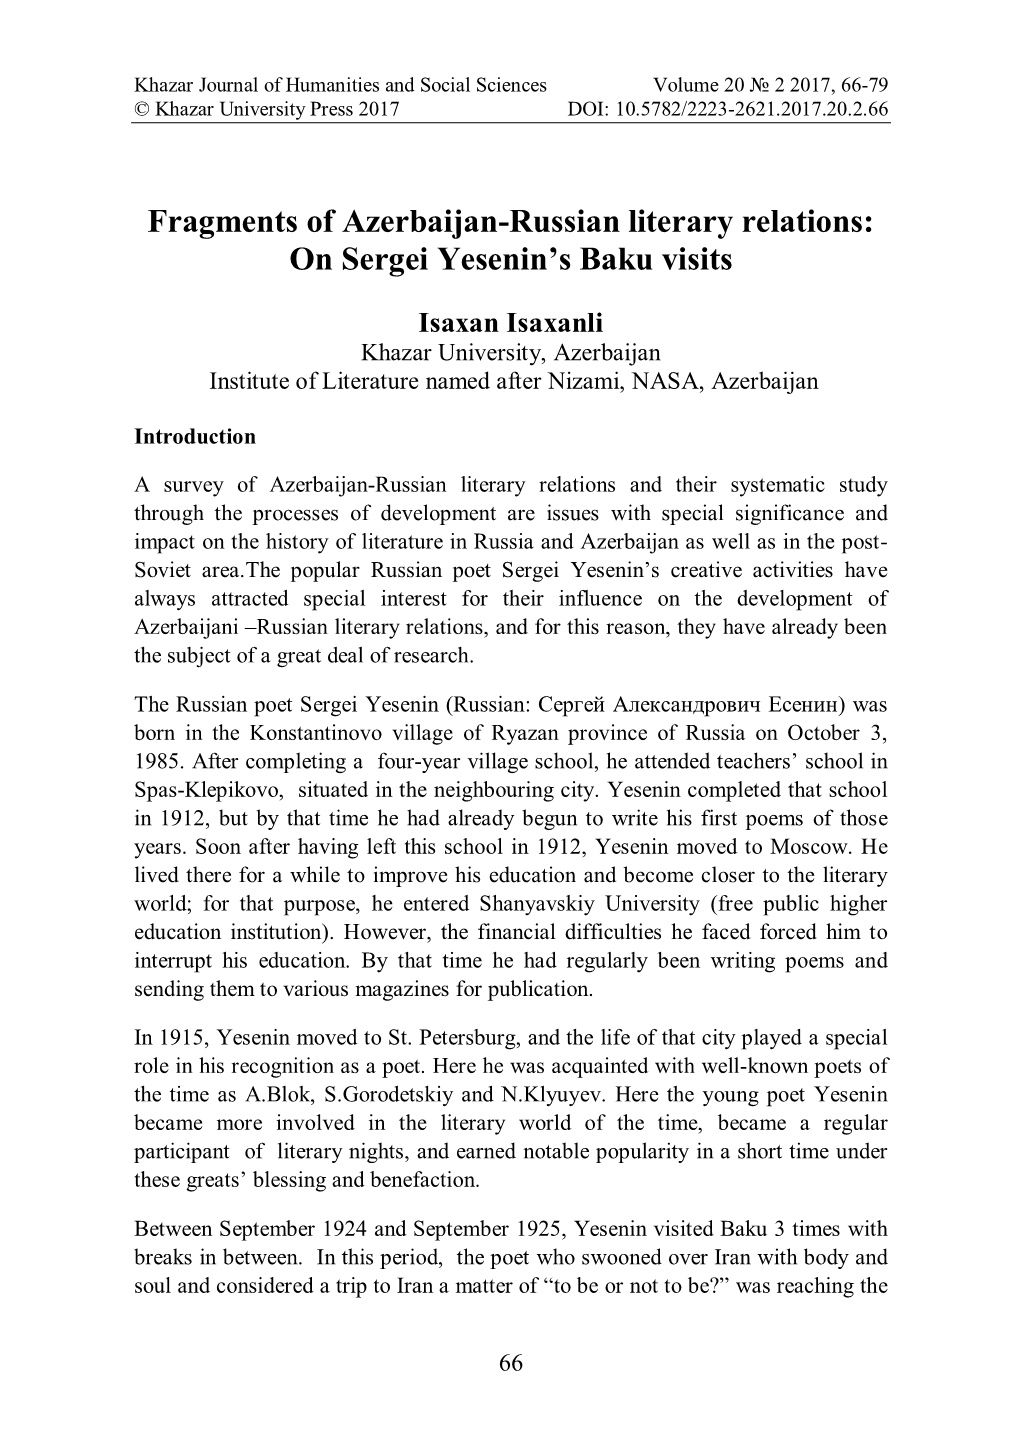 On Sergei Yesenin's Baku Visits